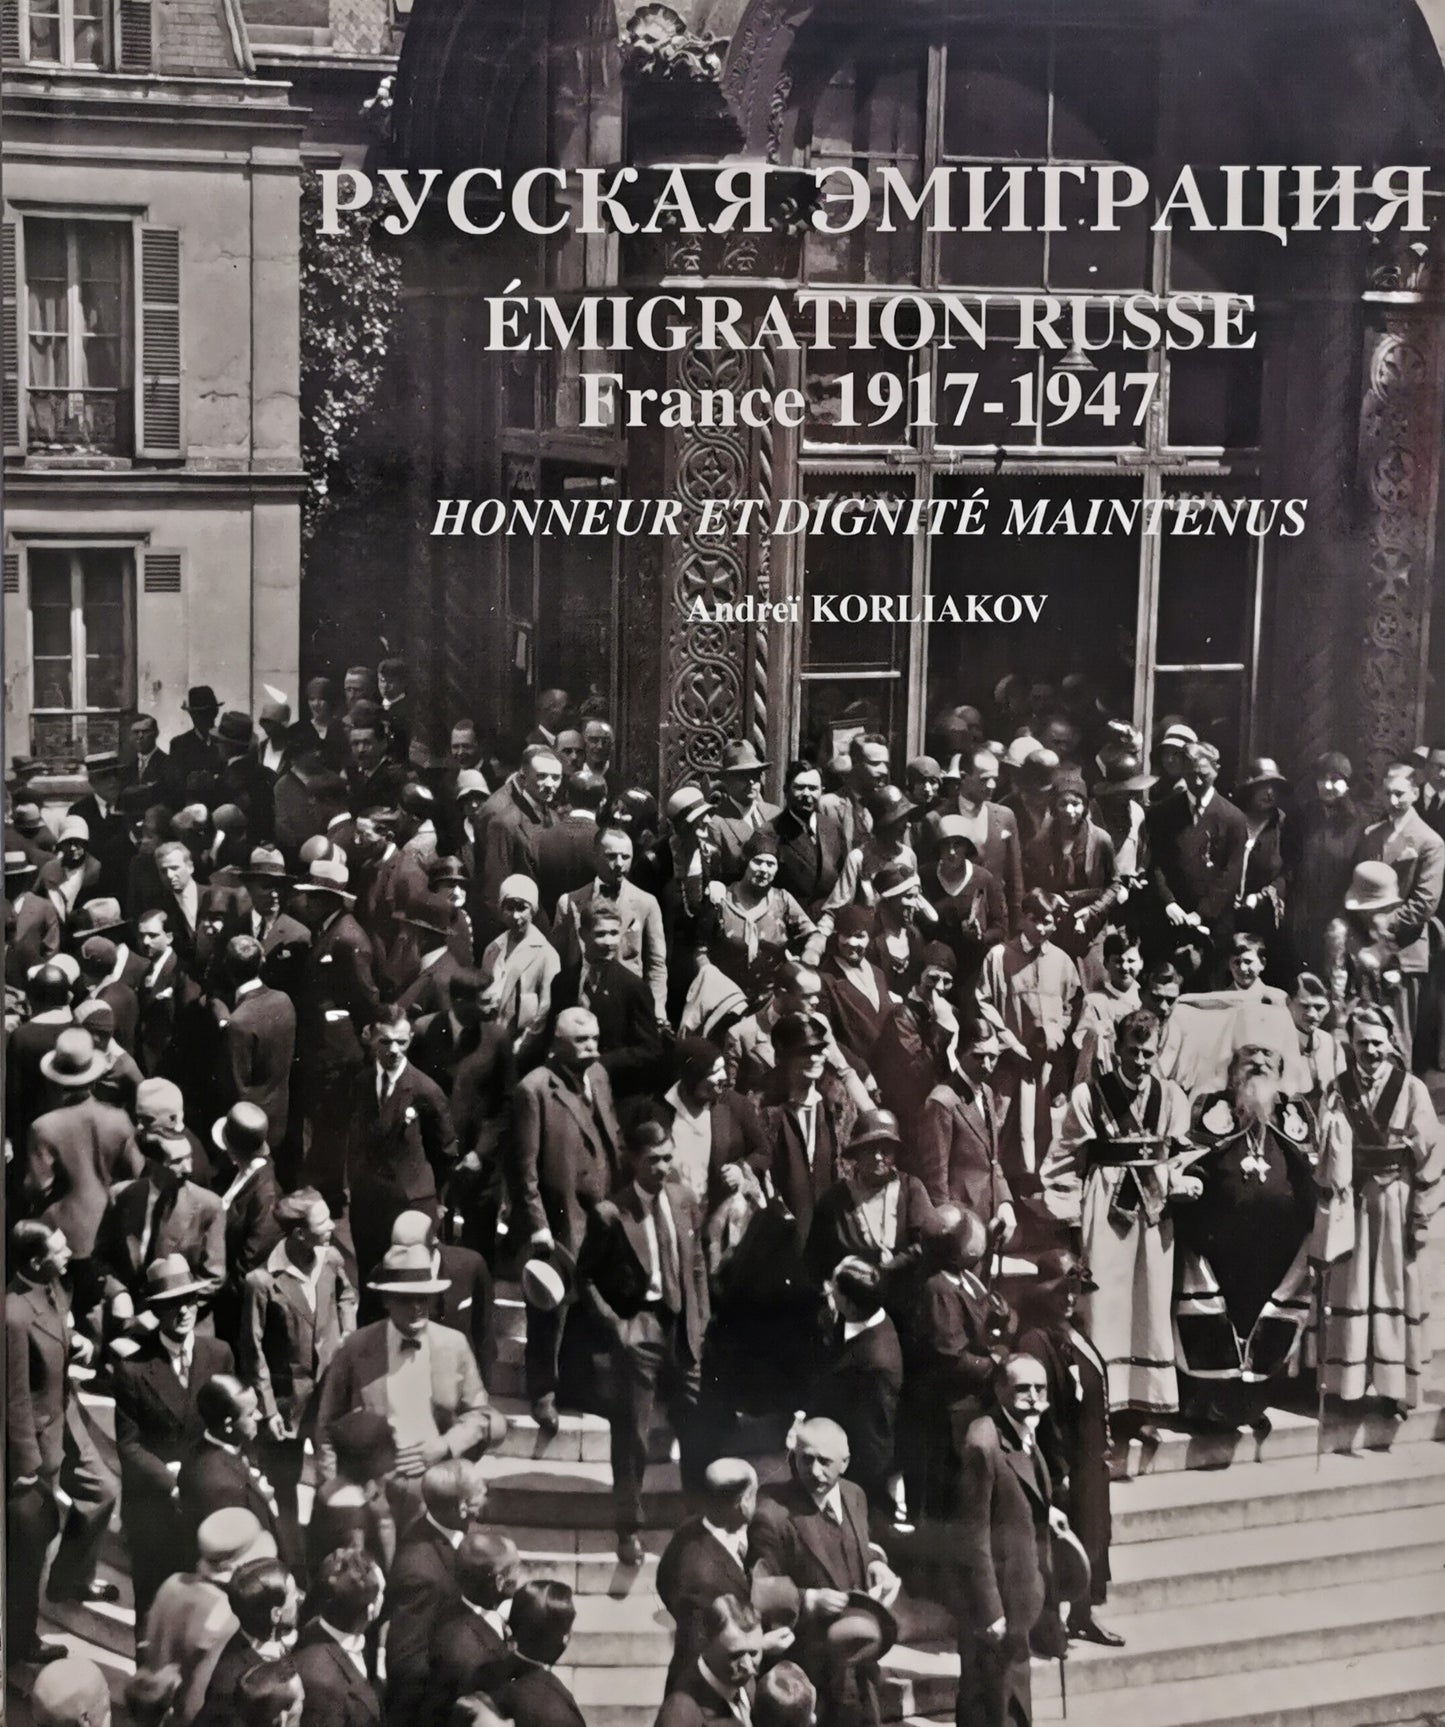 L'émigration russe en photos France 1917-1947, Honneur et dignité maintenus, 2e volume de la série, Andreï Korliakov, YMCA-Press, 2001.